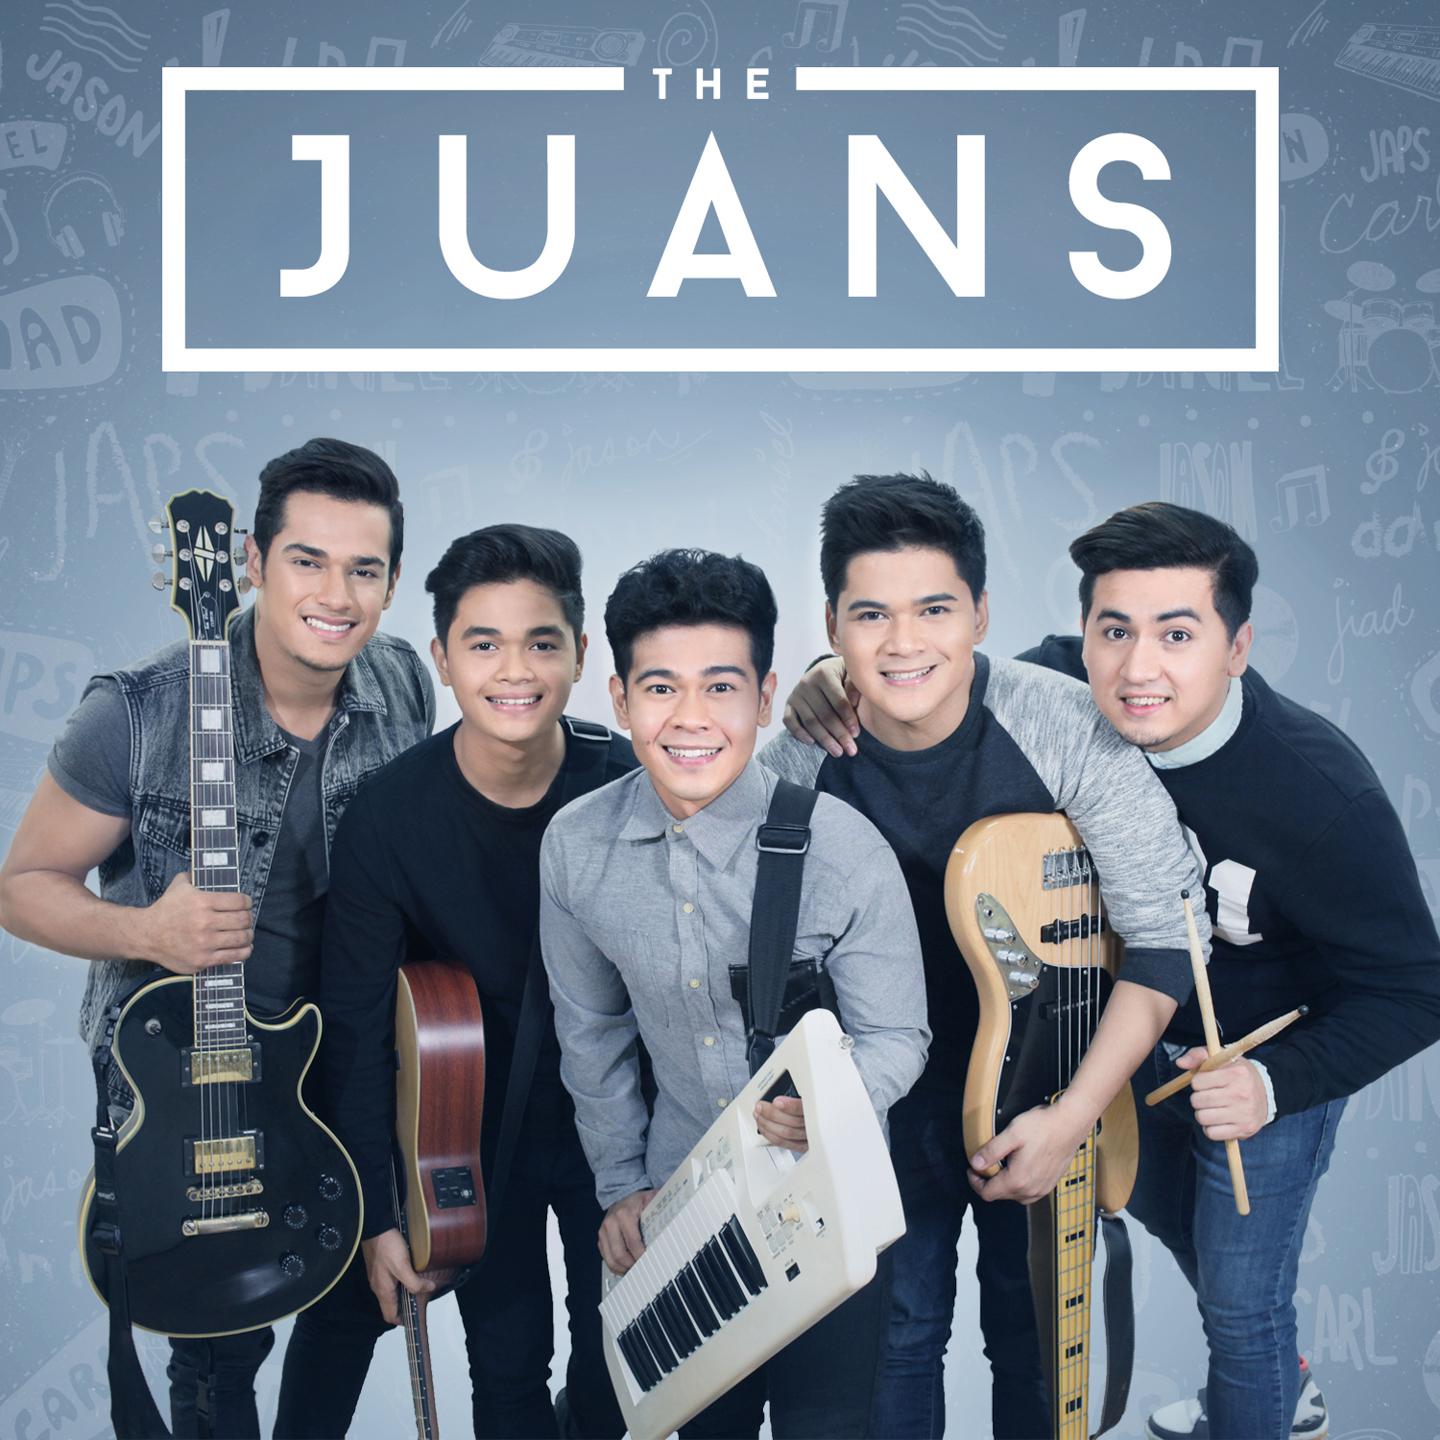 The Juans